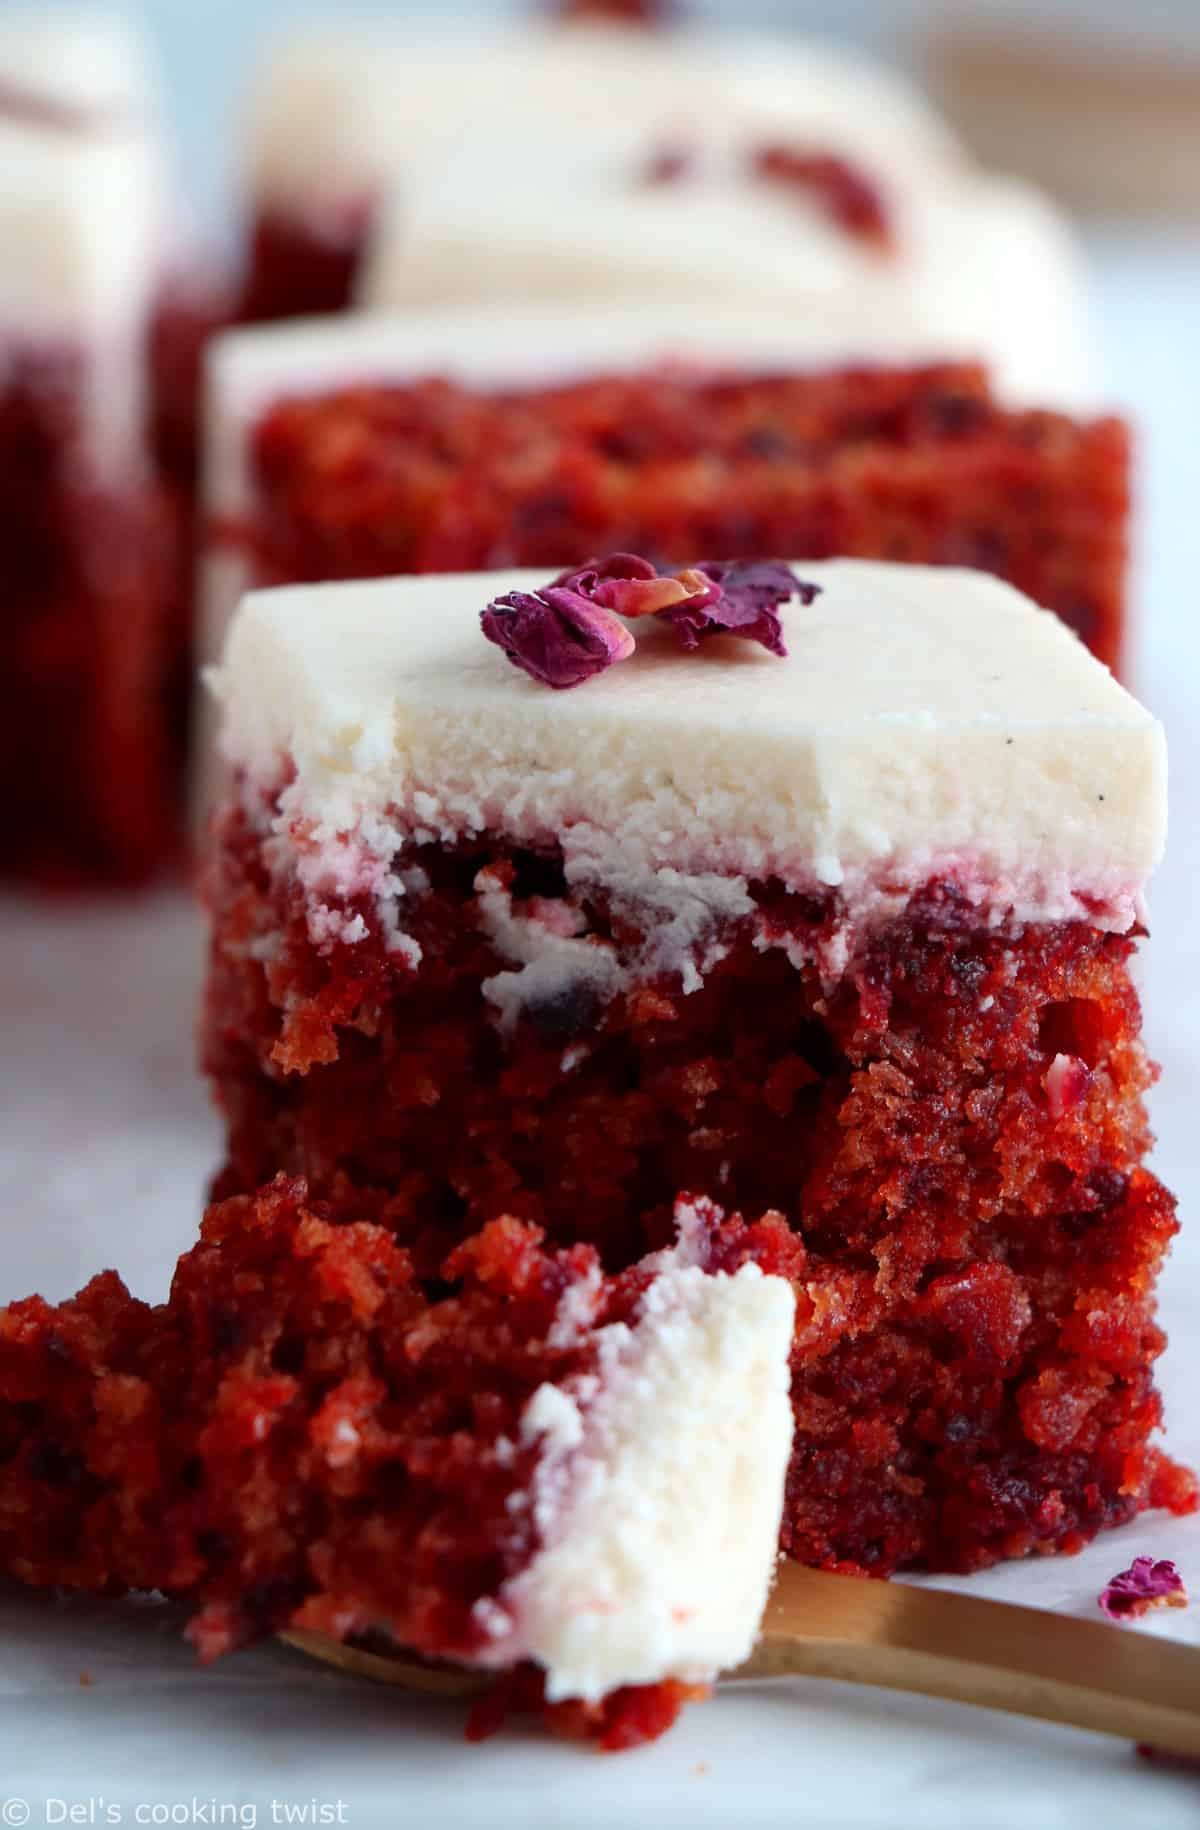 Le gâteau à la betterave façon "red velvet", c'est un dessert doux et très moelleux à la couleur rouge velour intense, réalisé sans colorant alimentaire.